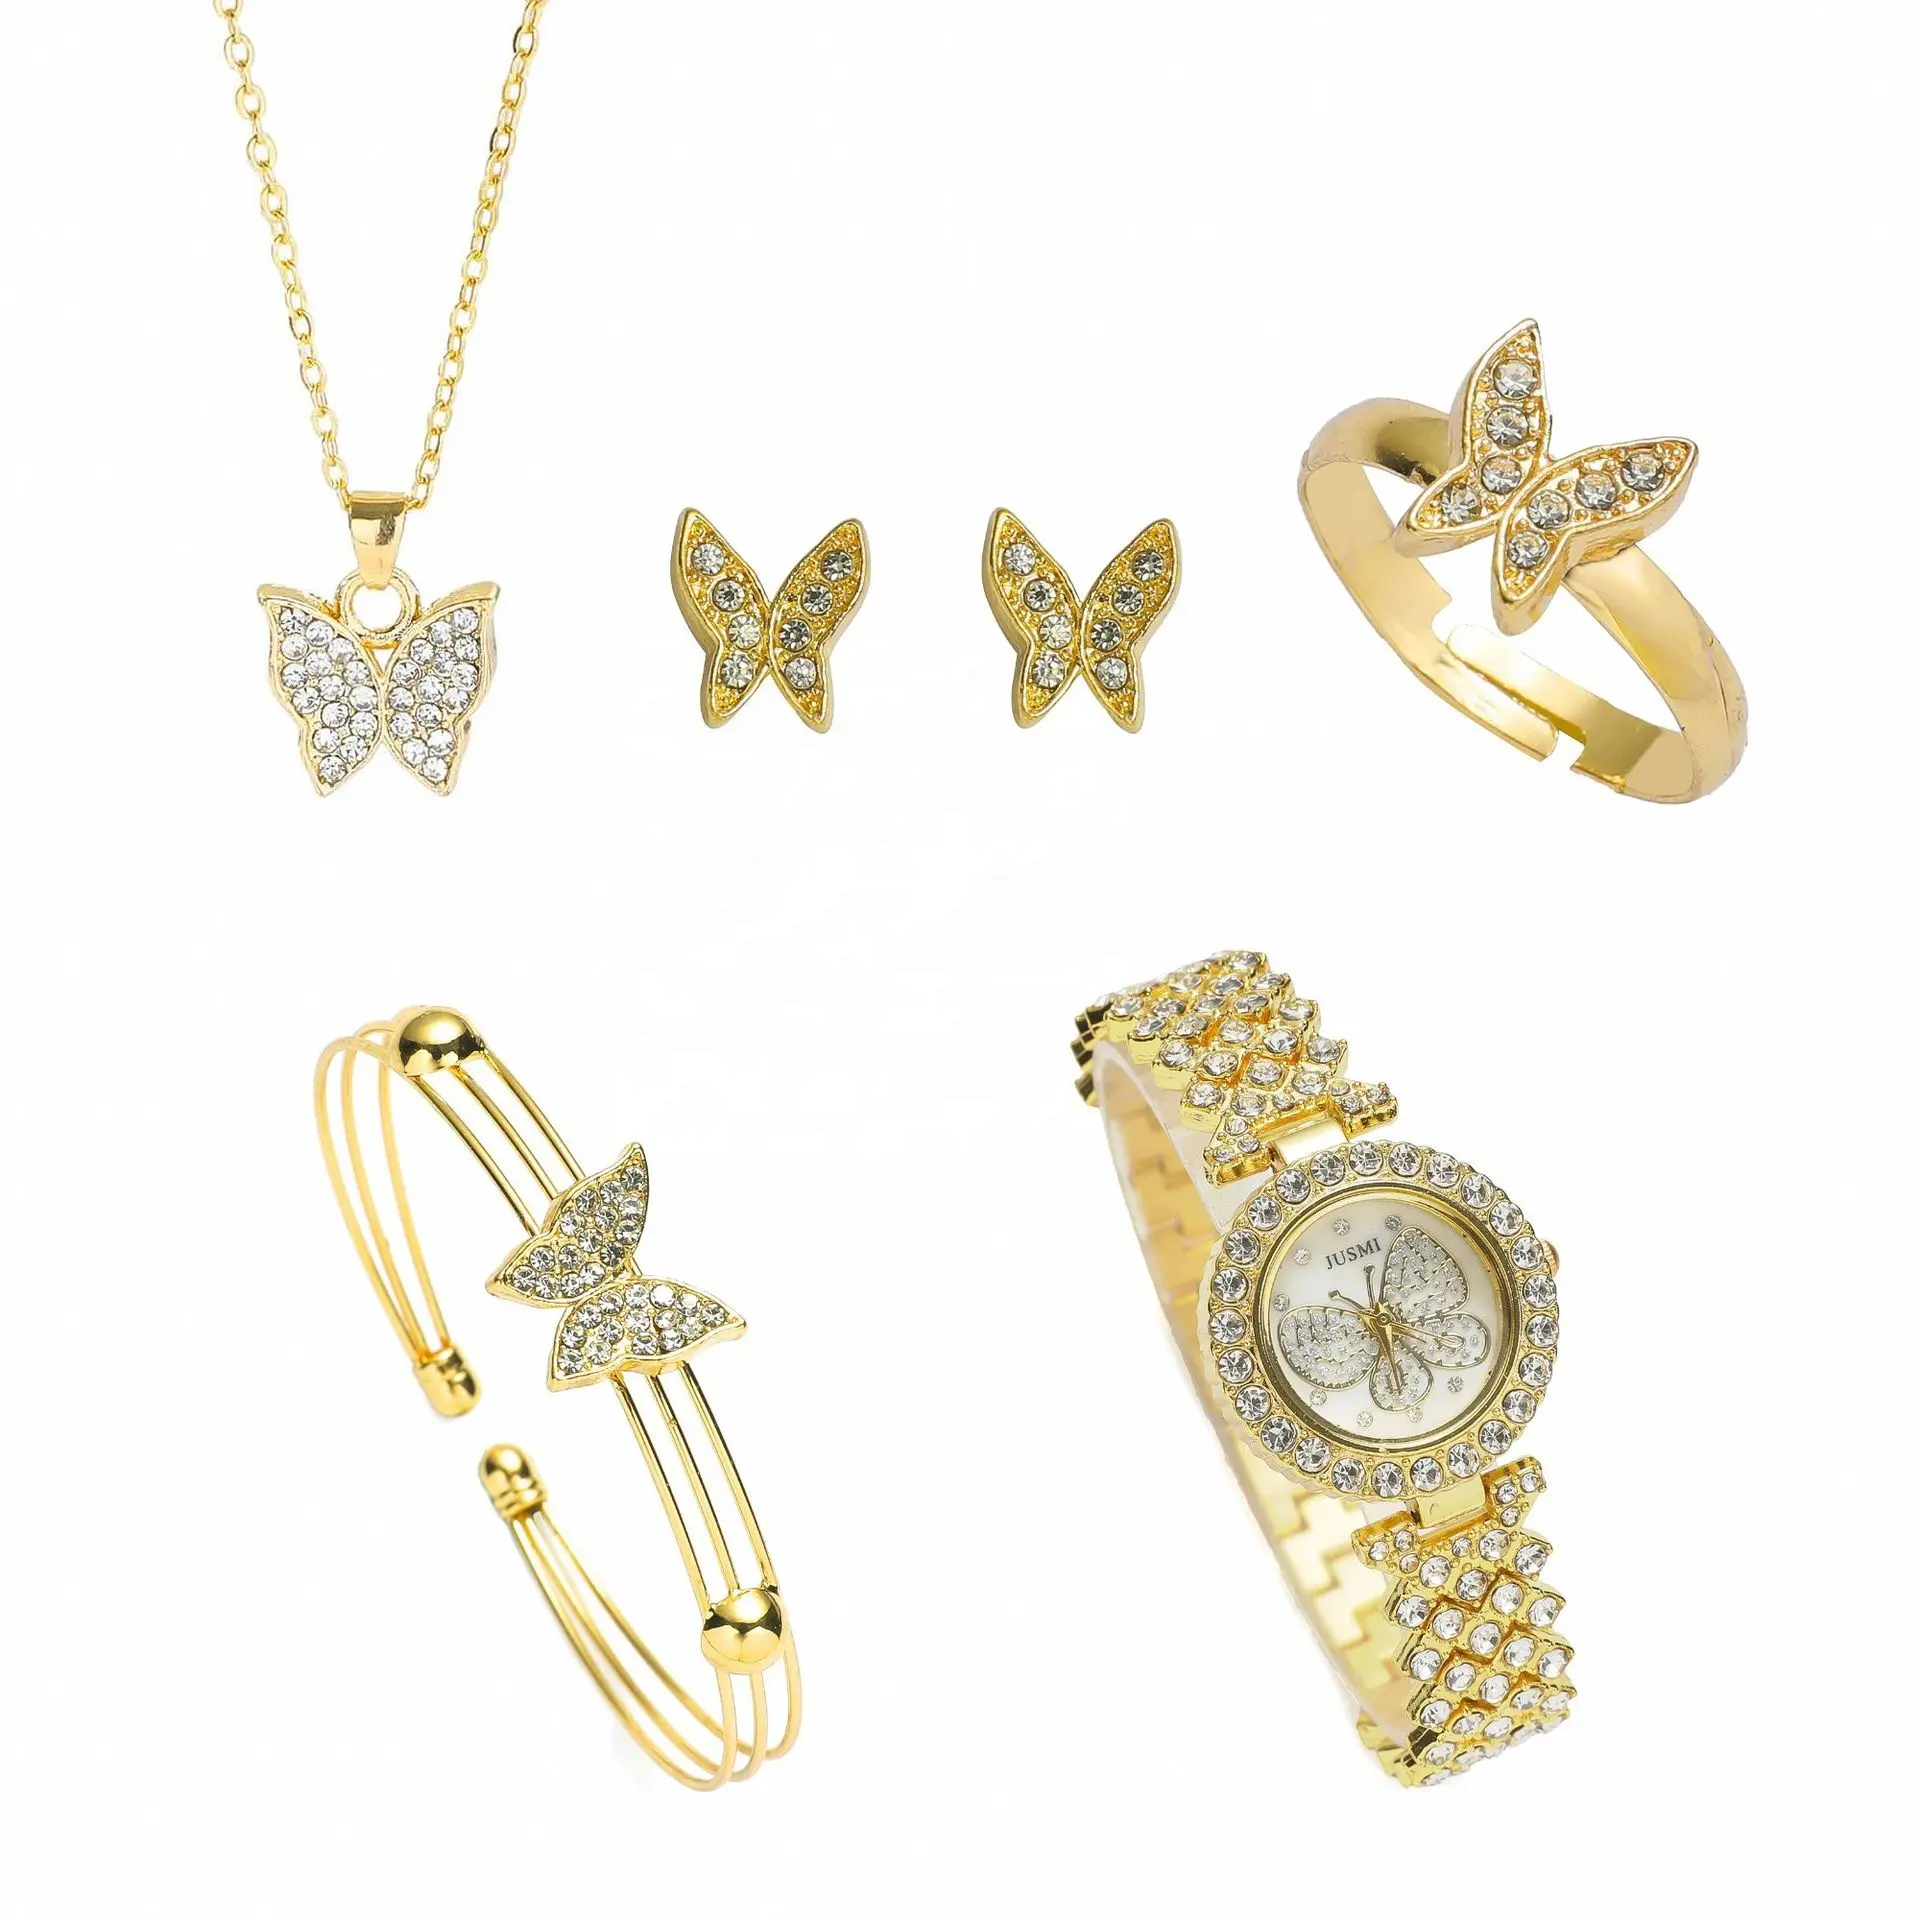 Nueva tendencia mariposa diamante cuarzo reloj conjunto oro cristal reloj pendientes pulsera anillo collar joyería conjunto